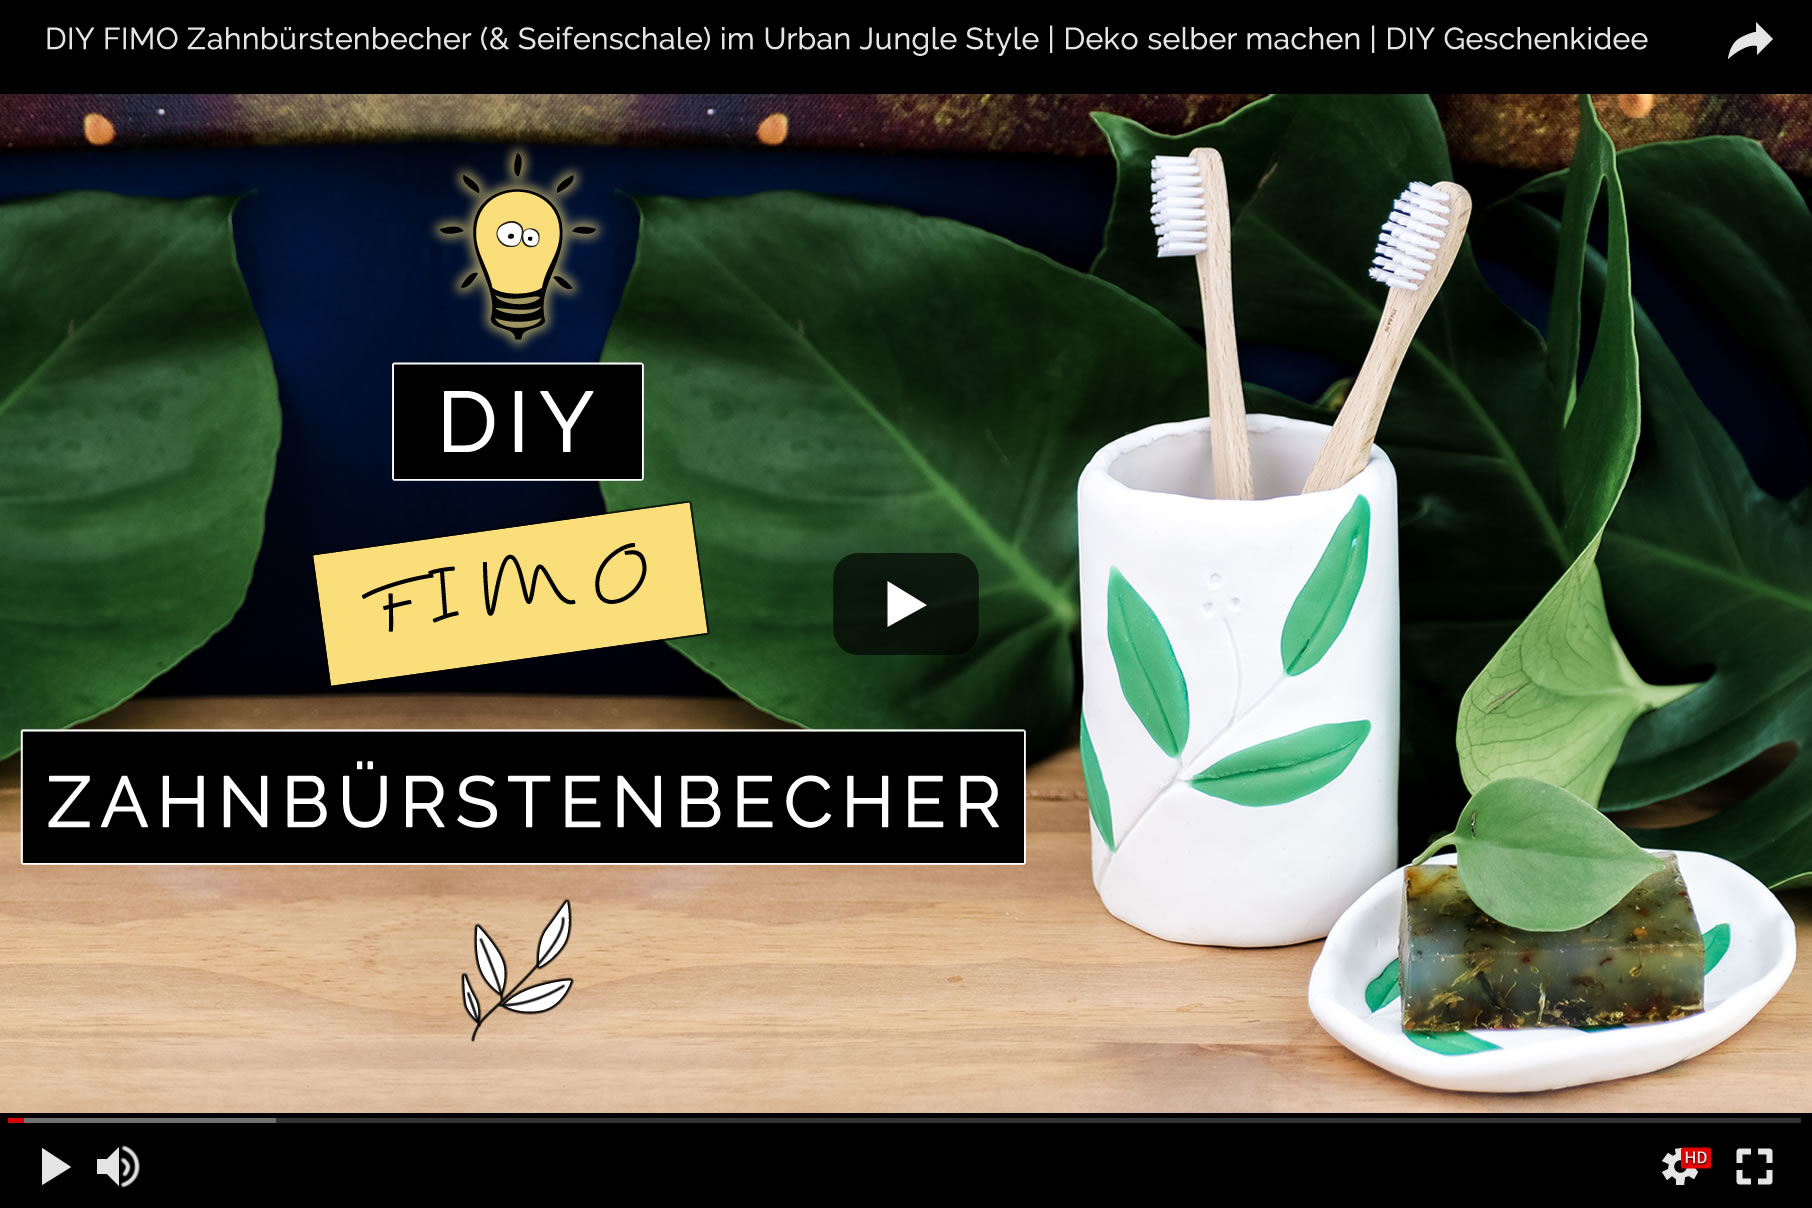 DIY FIMO Zahnbürstenbecher im Botanik-Look | Bad-Accessoire & DIY Geschenkidee im Urban Jungle Style selber machen | Filizity.com | DIY-Blog aus dem Rheinland #fimo #urbanjungle #pflanzen